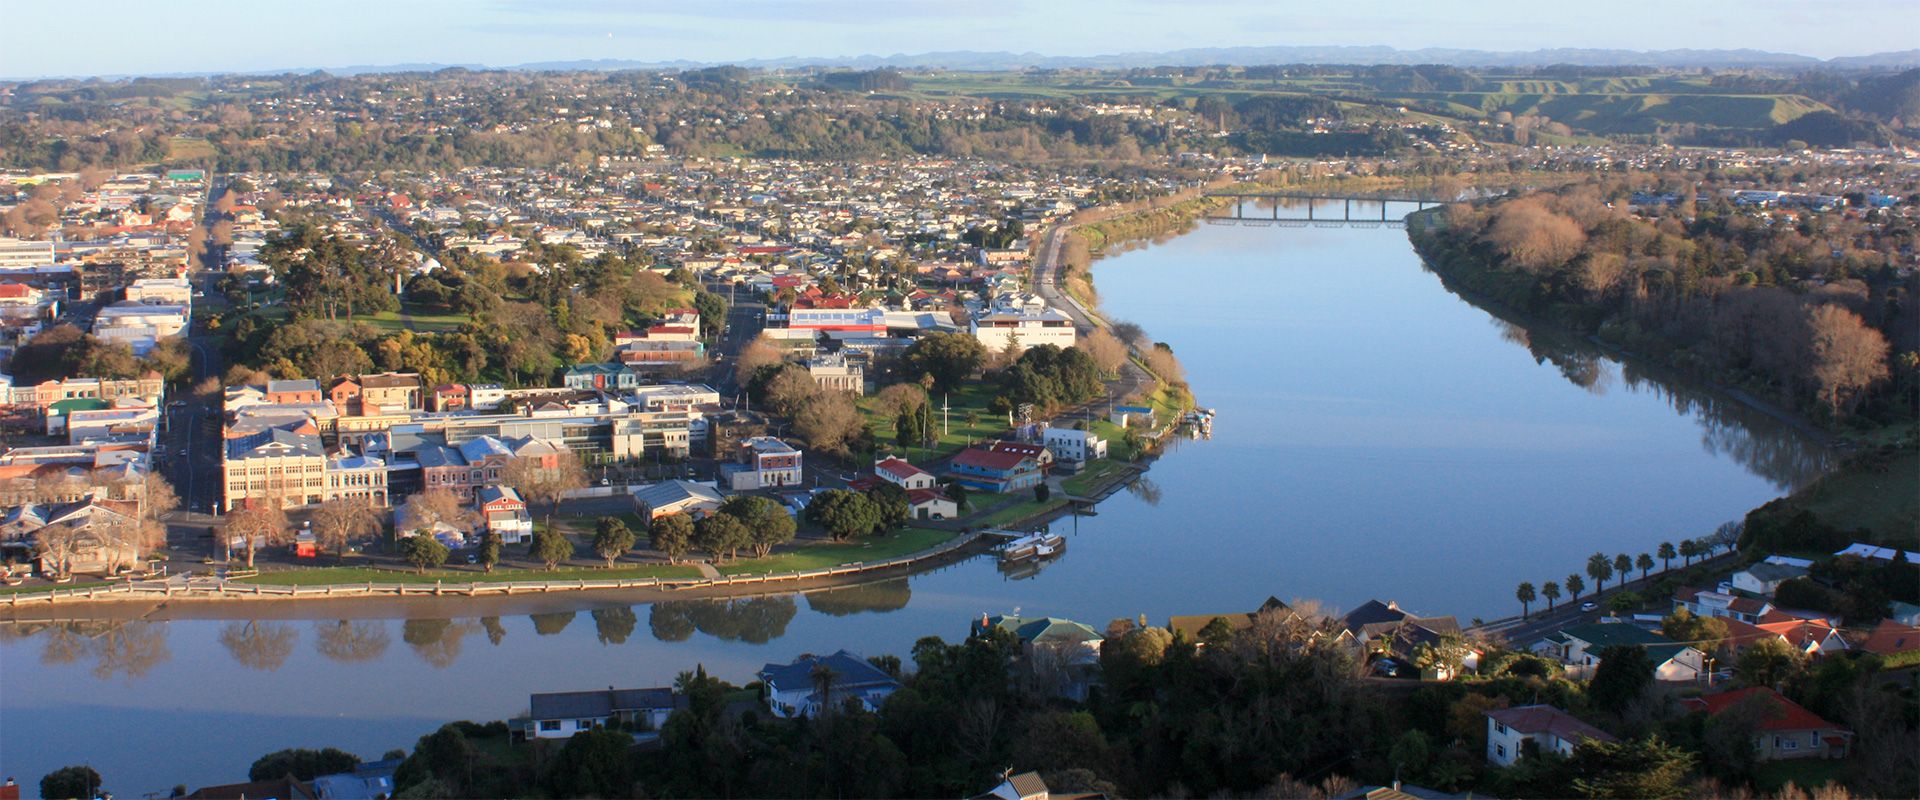 Whanganui river